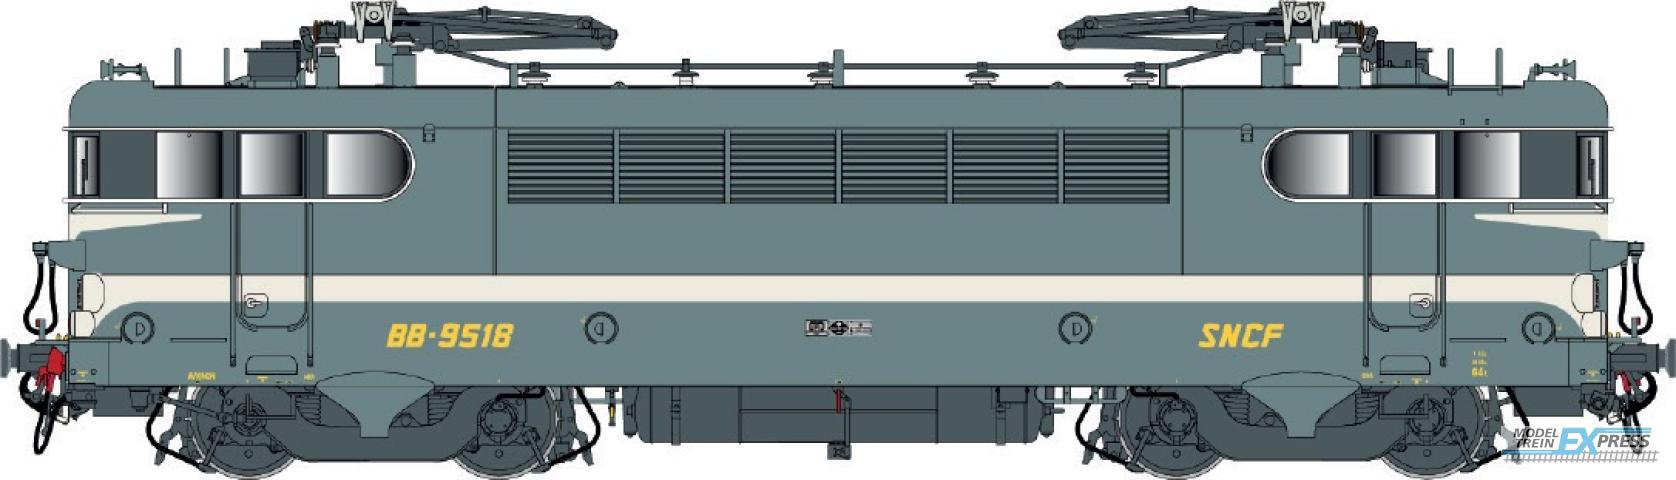 LS Models 10727 BB 9400, groen blauw, brede witte lijn, geschilderde snor, vet logo  /  Ep. IV  /  SNCF  /  HO  /  AC  /  1 P.